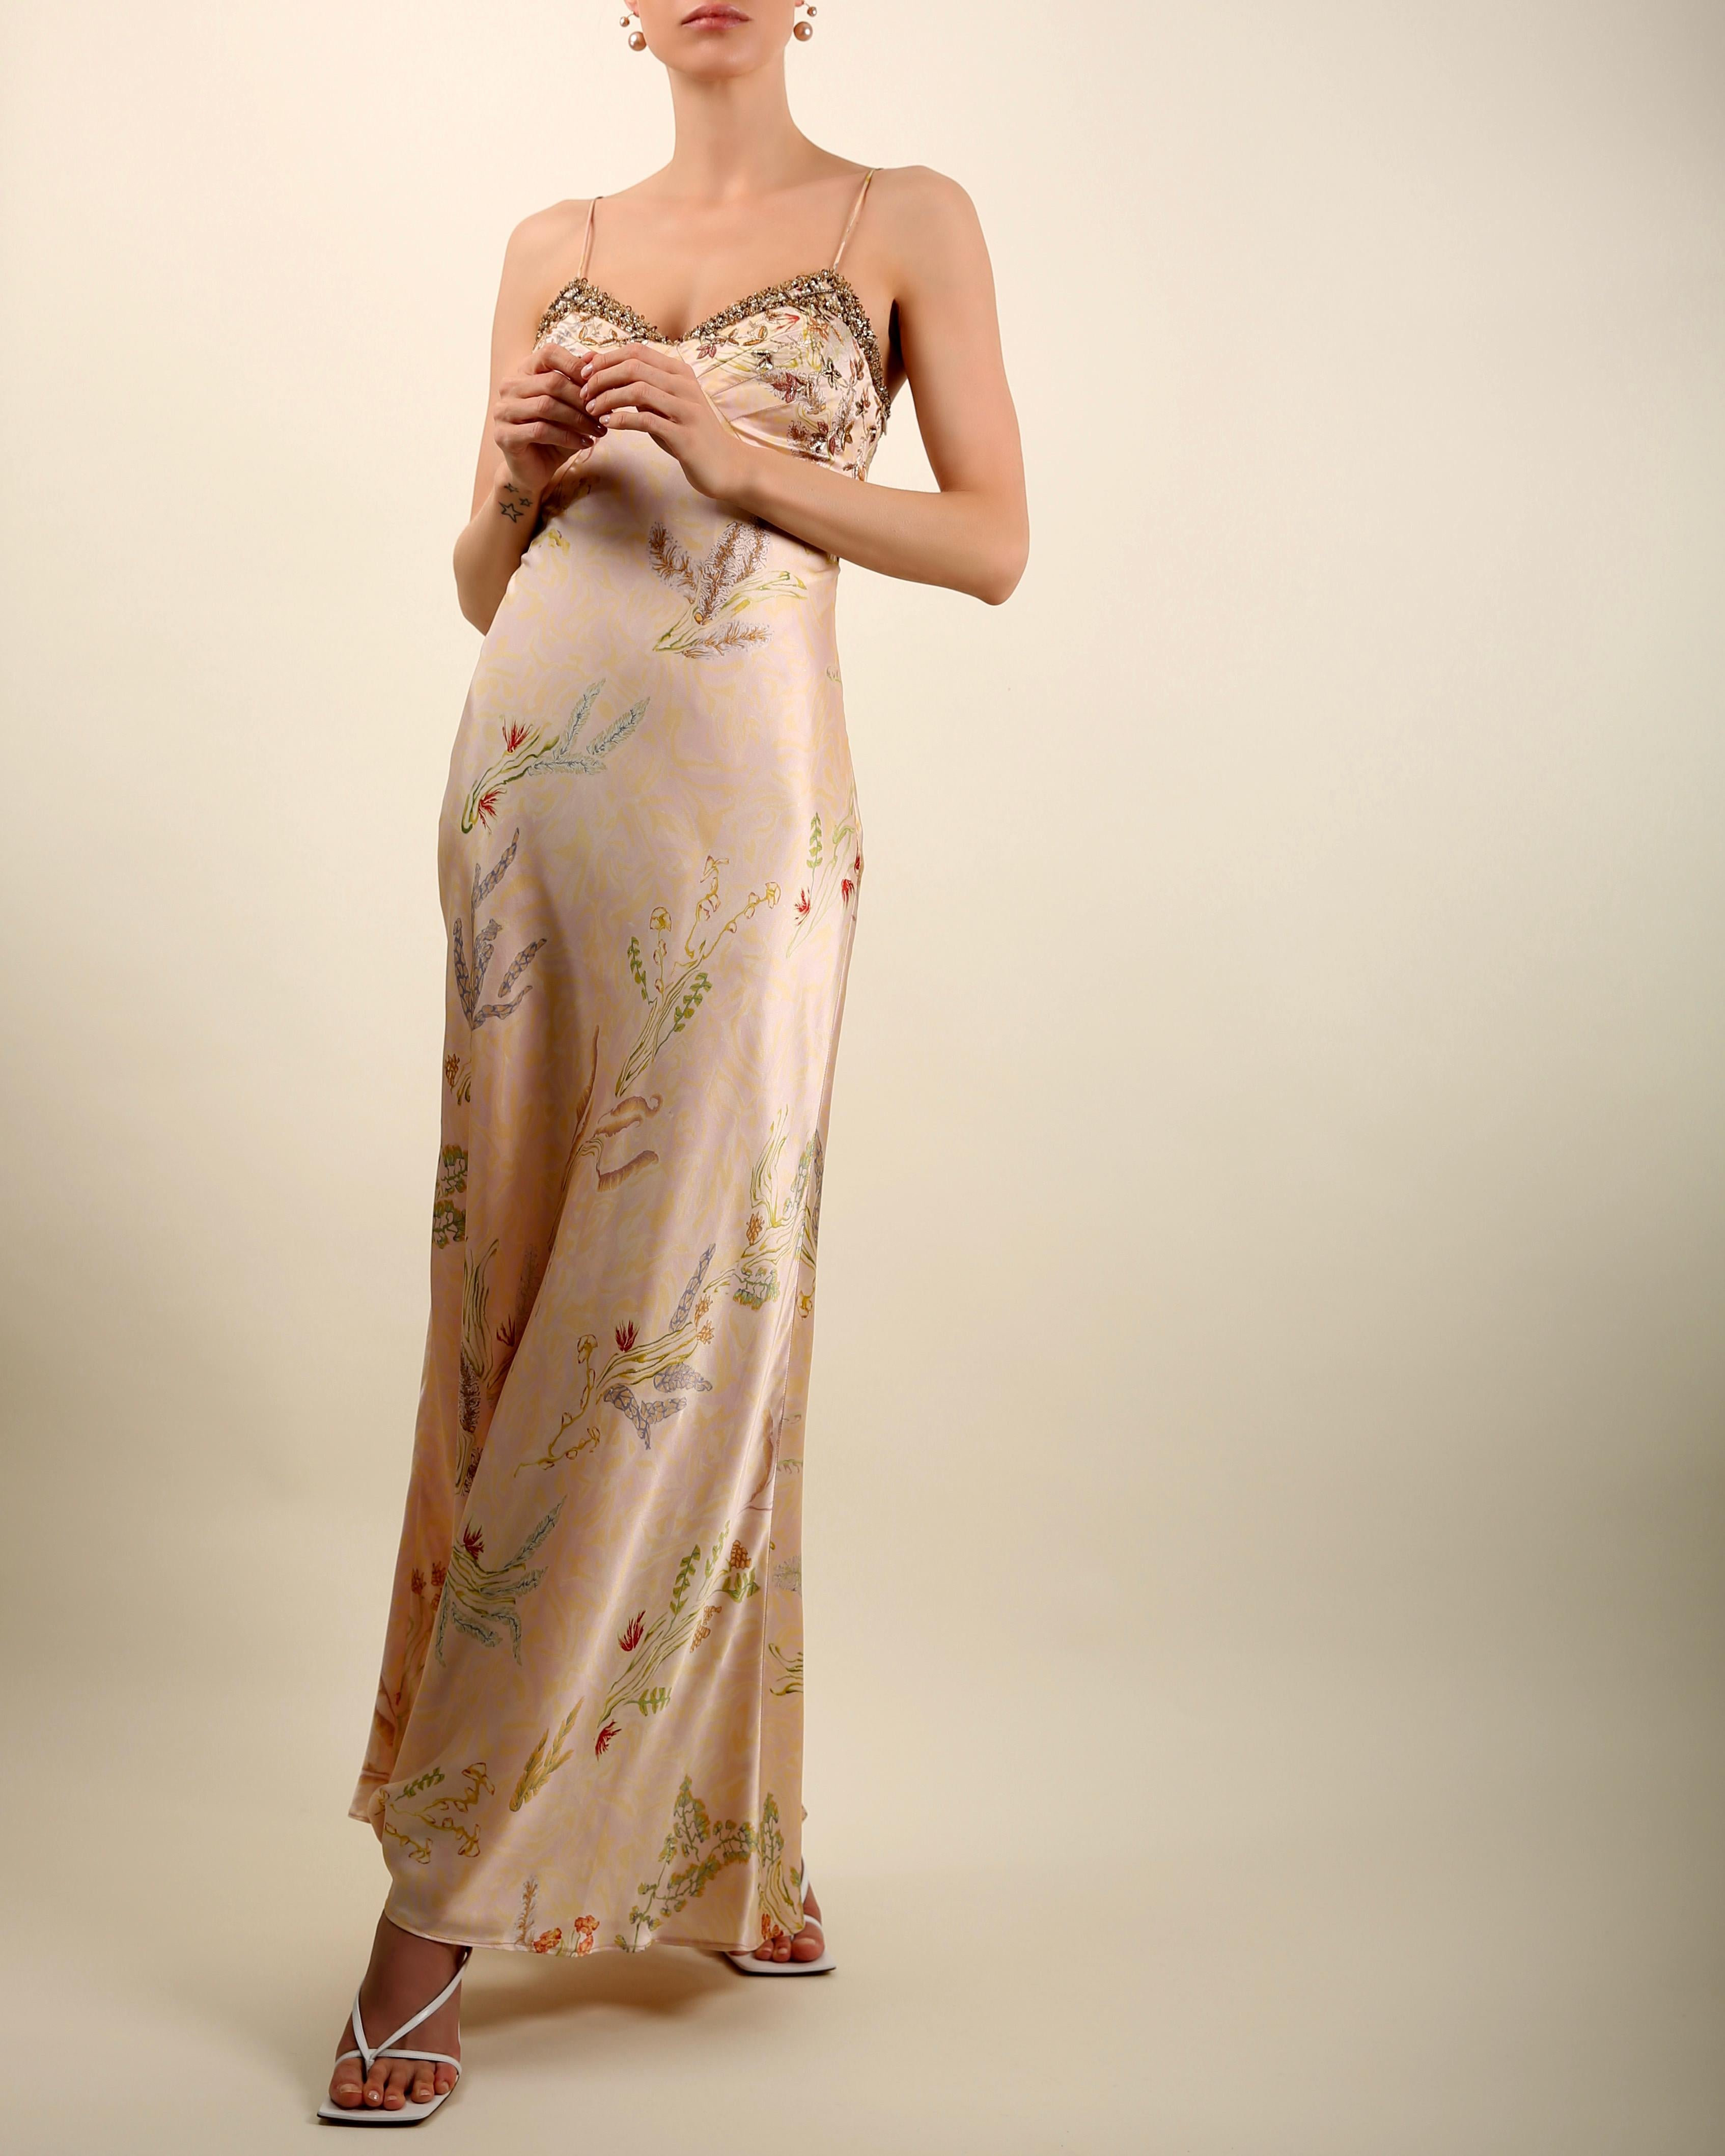 Women's Oscar de la Renta vintage 1998 pink floral embellished silk slip maxi dress gown